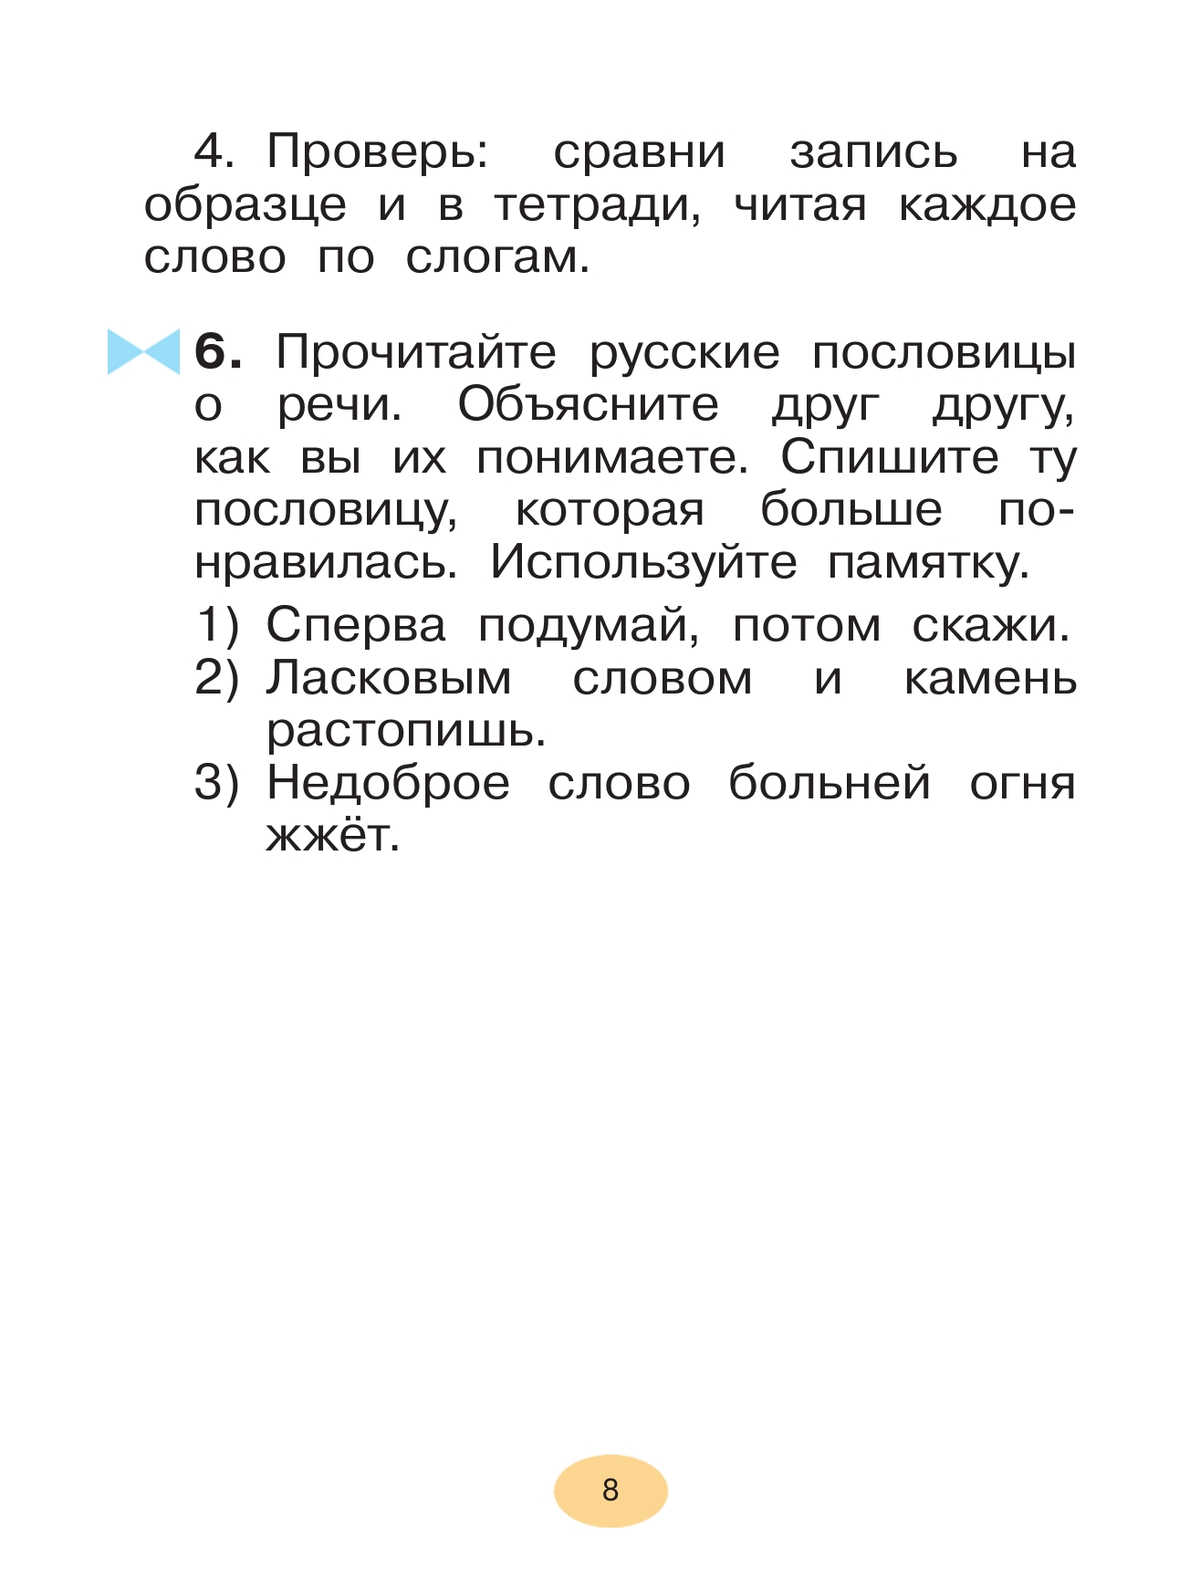 Русский язык. 1 класс. Учебное пособие 10